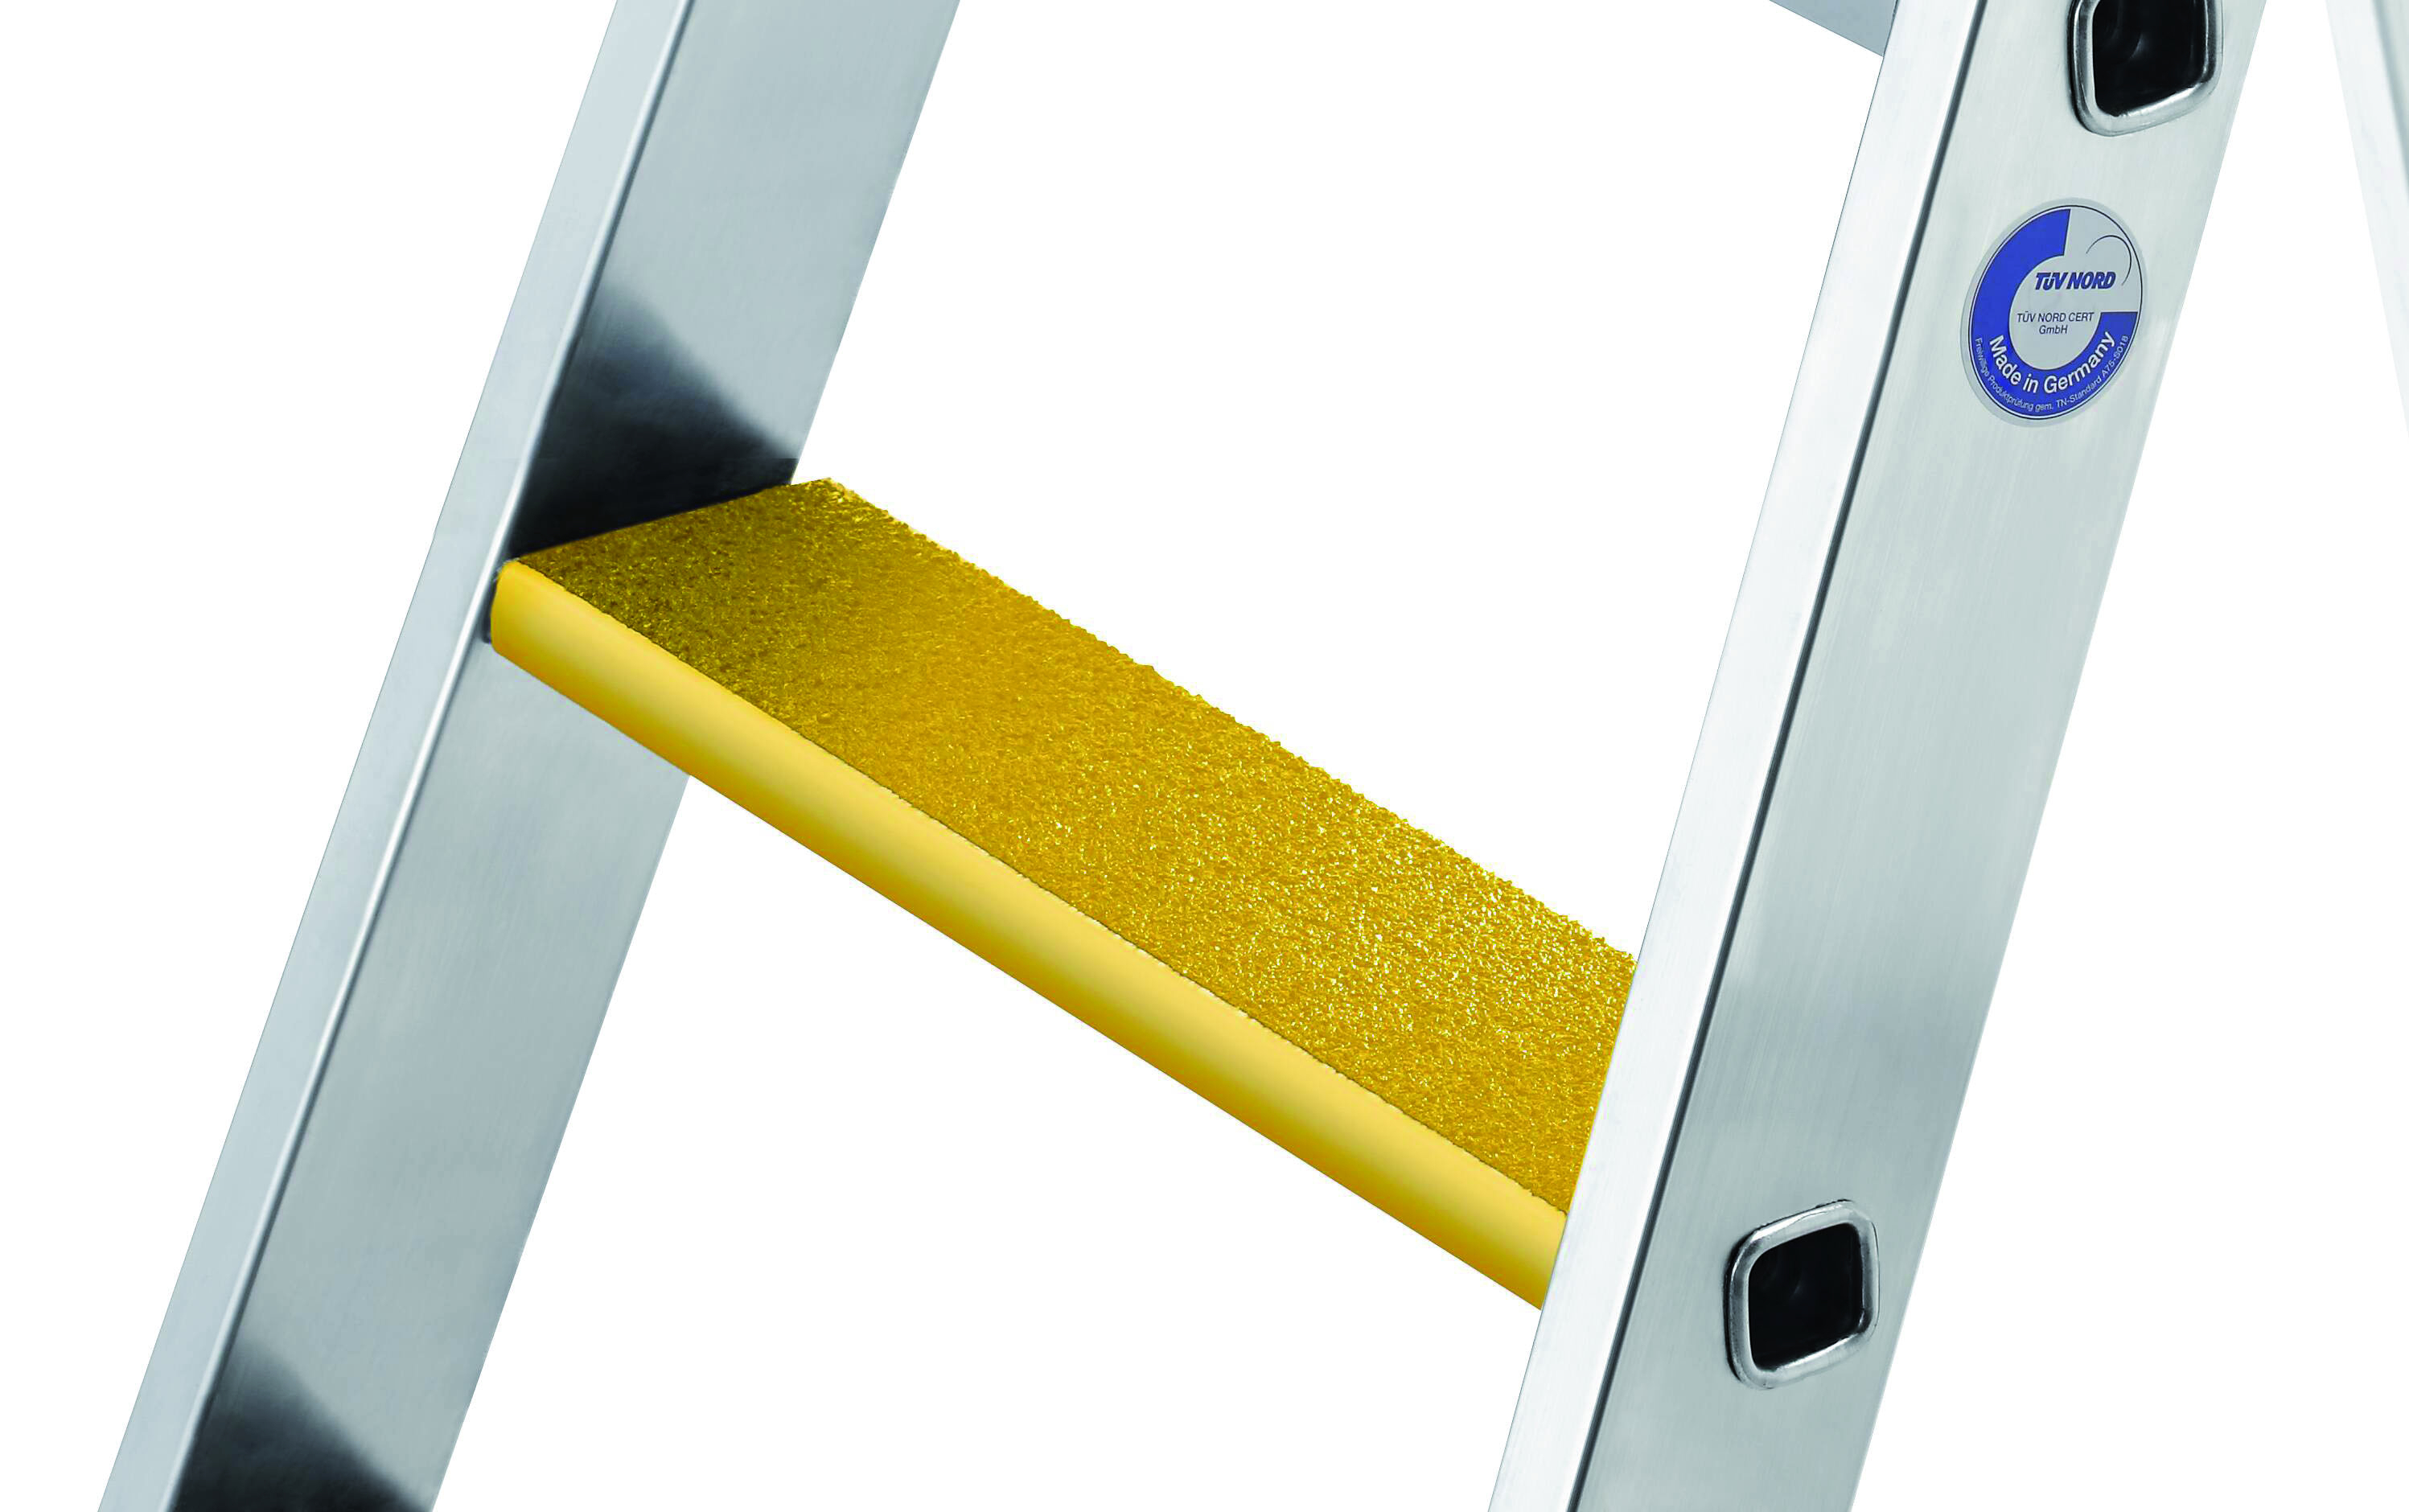 Nachrüstsatz Trittauflage clip-step R 13 gelb, 379 mm